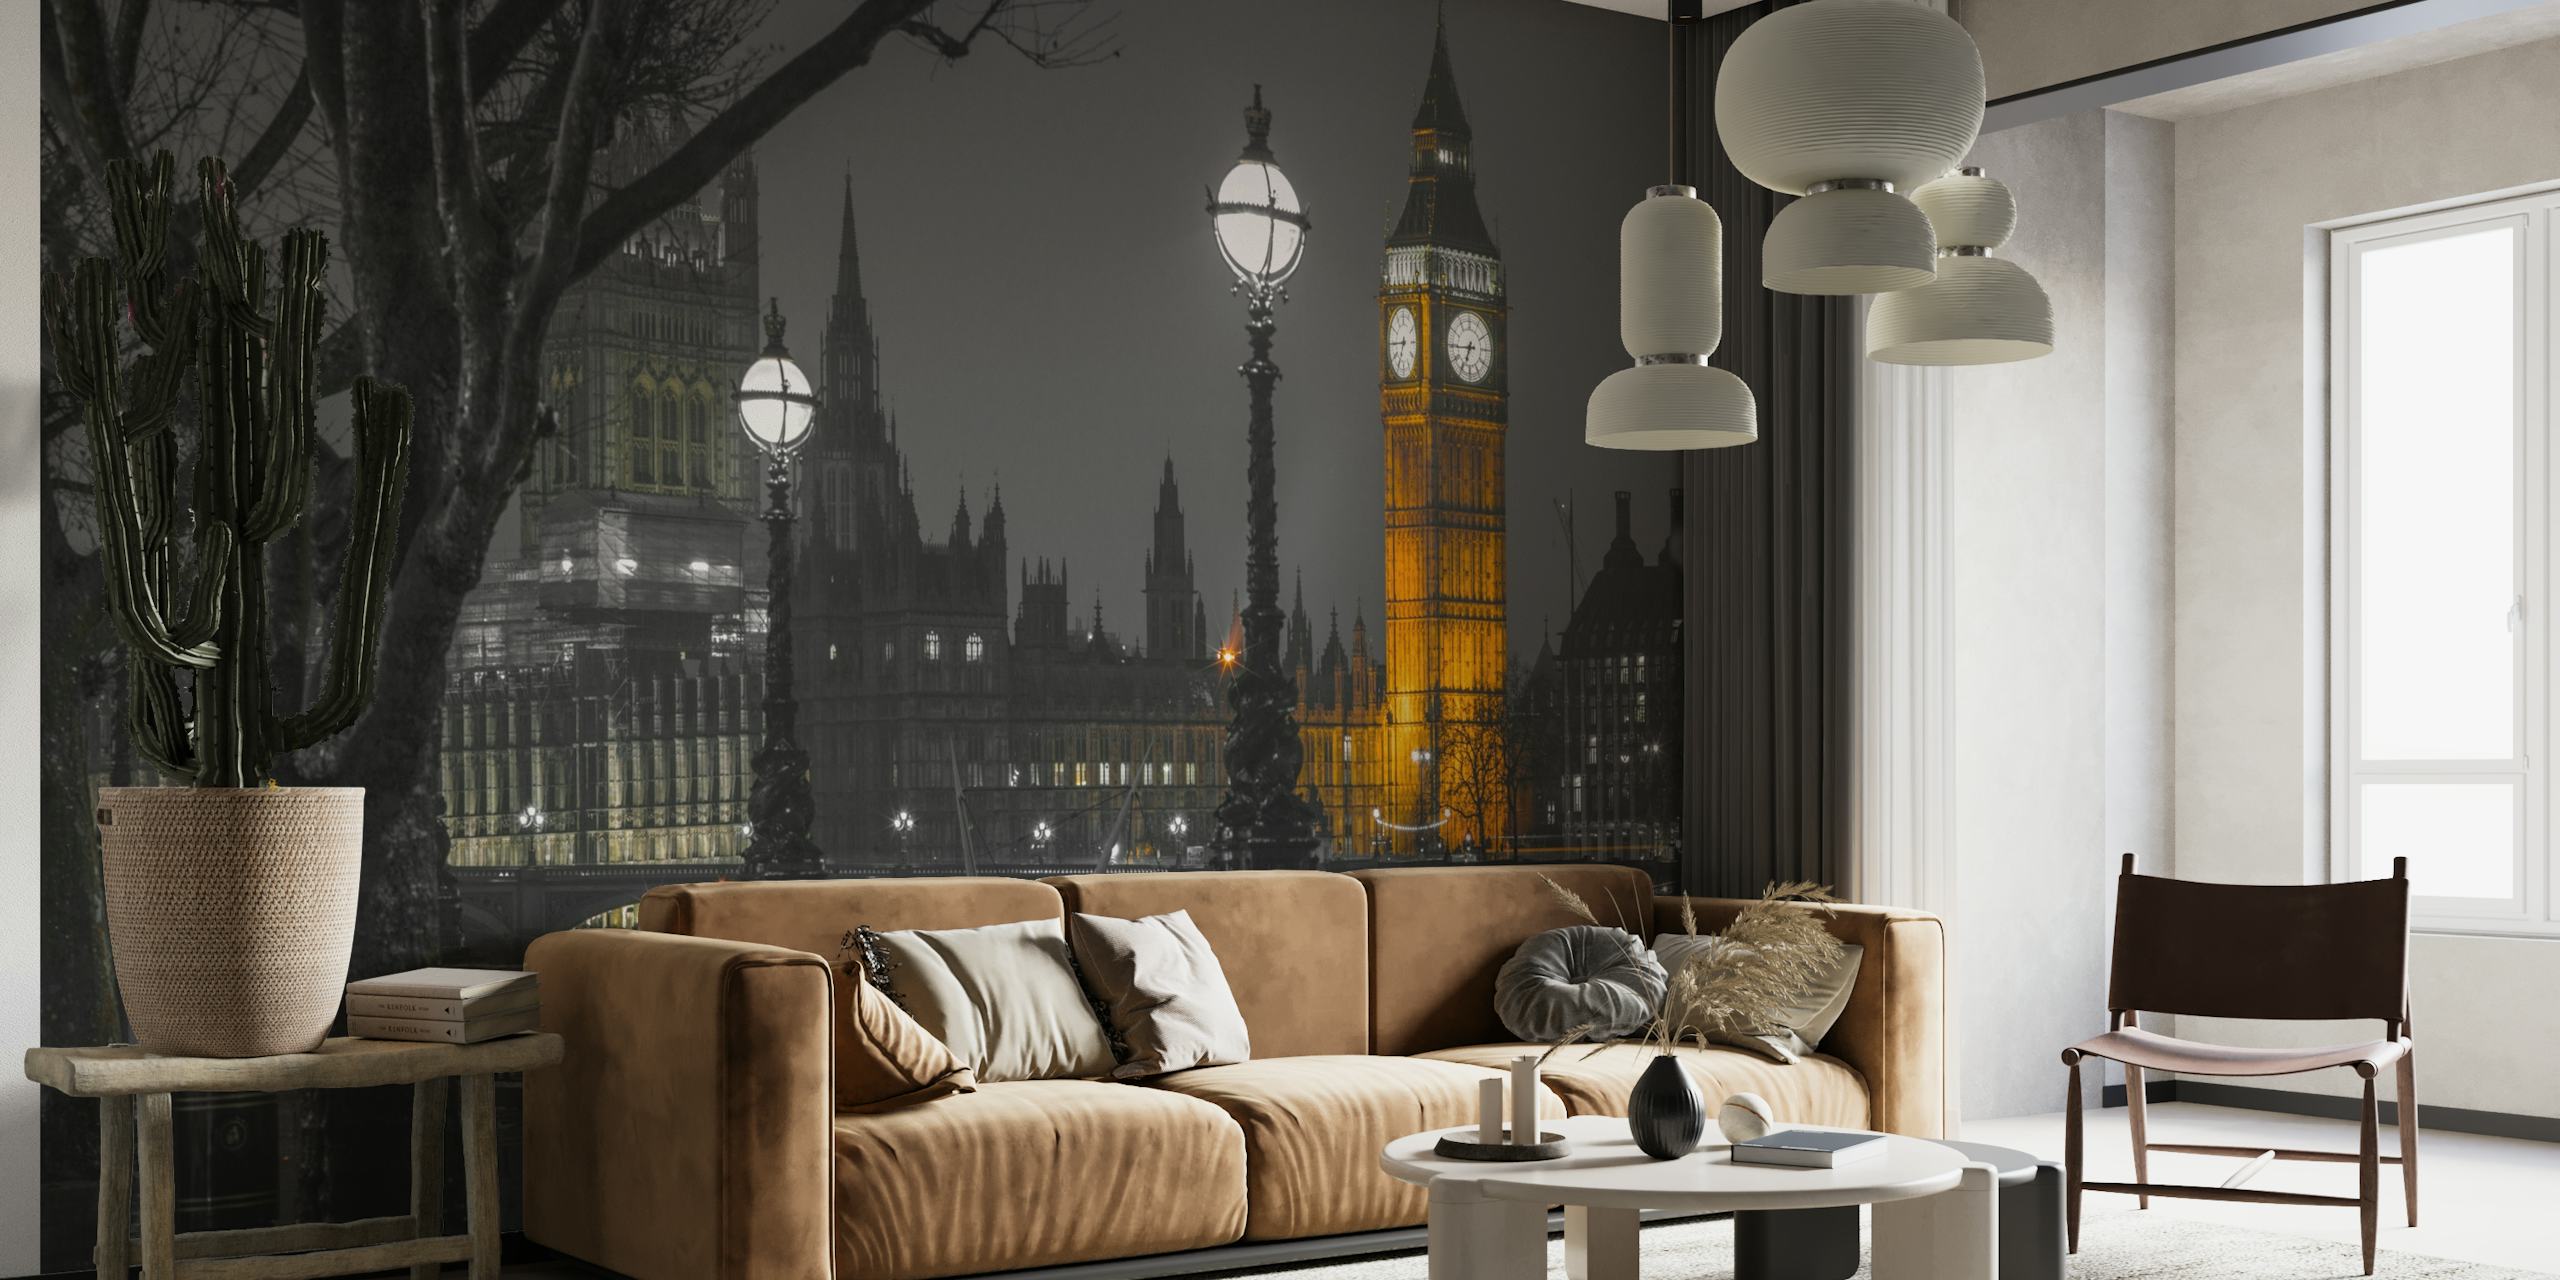 Mural de parede preto e branco da paisagem urbana de Londres ao entardecer com a Elizabeth Tower iluminada